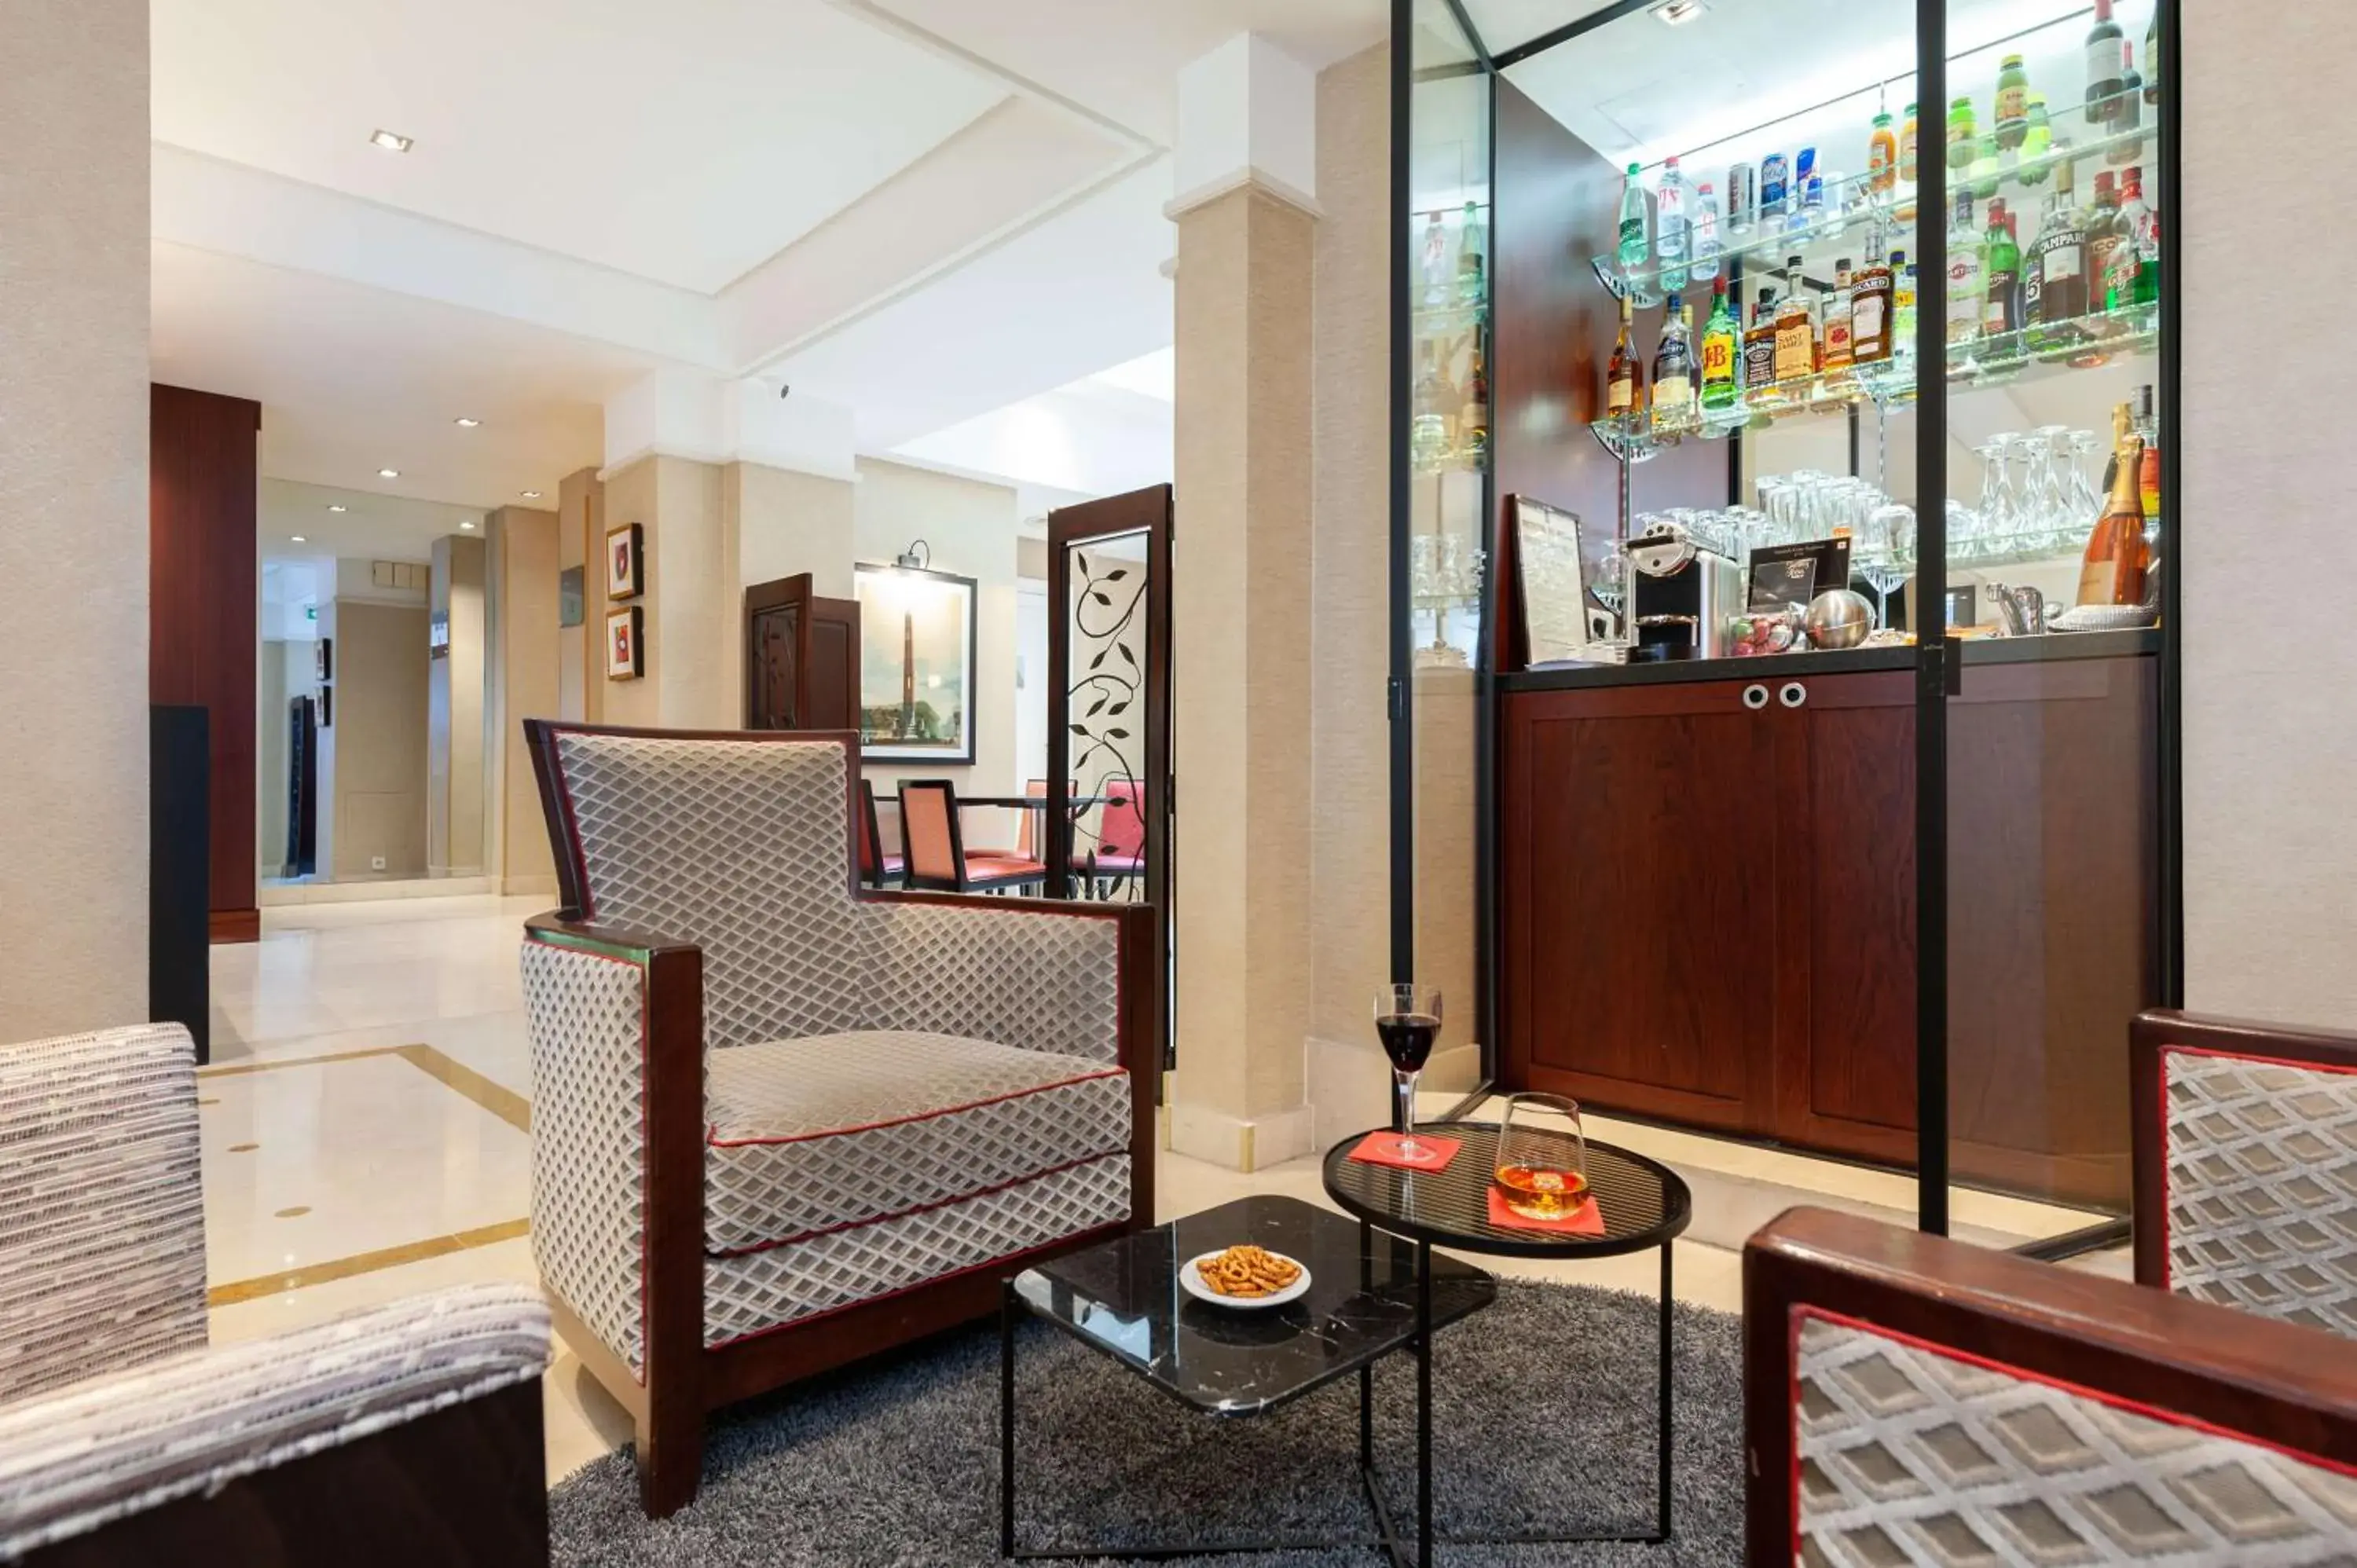 Lounge or bar, Lobby/Reception in Best Western Plus Hotel Sydney Opera